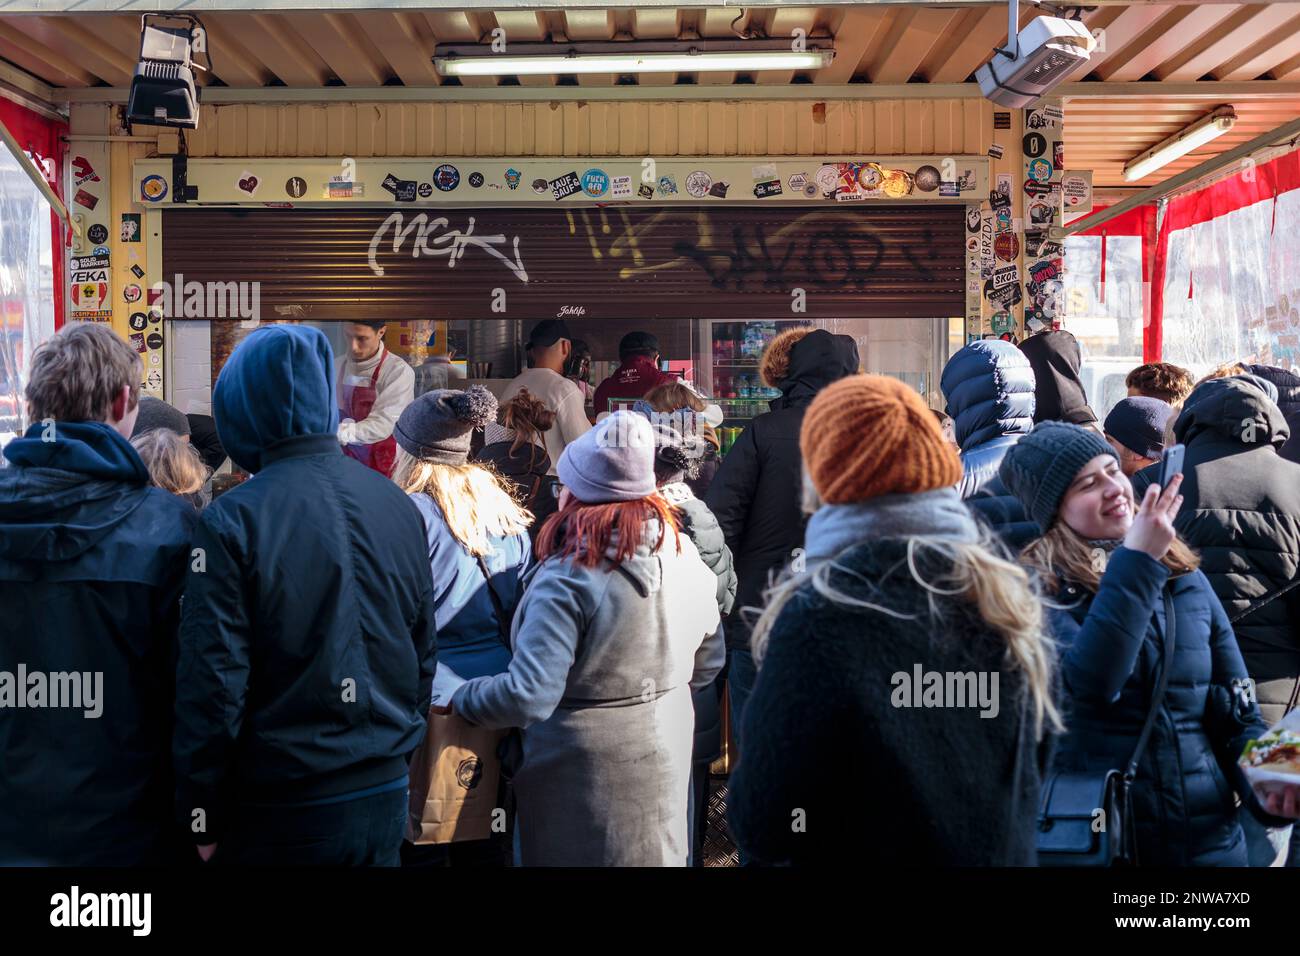 Les touristes font la queue en grand nombre lors d'une journée froide et ensoleillée à la célèbre Mustafa Gemüse Kebap sur Mehringdamm, Kreuzberg, Berlin, Allemagne. Banque D'Images